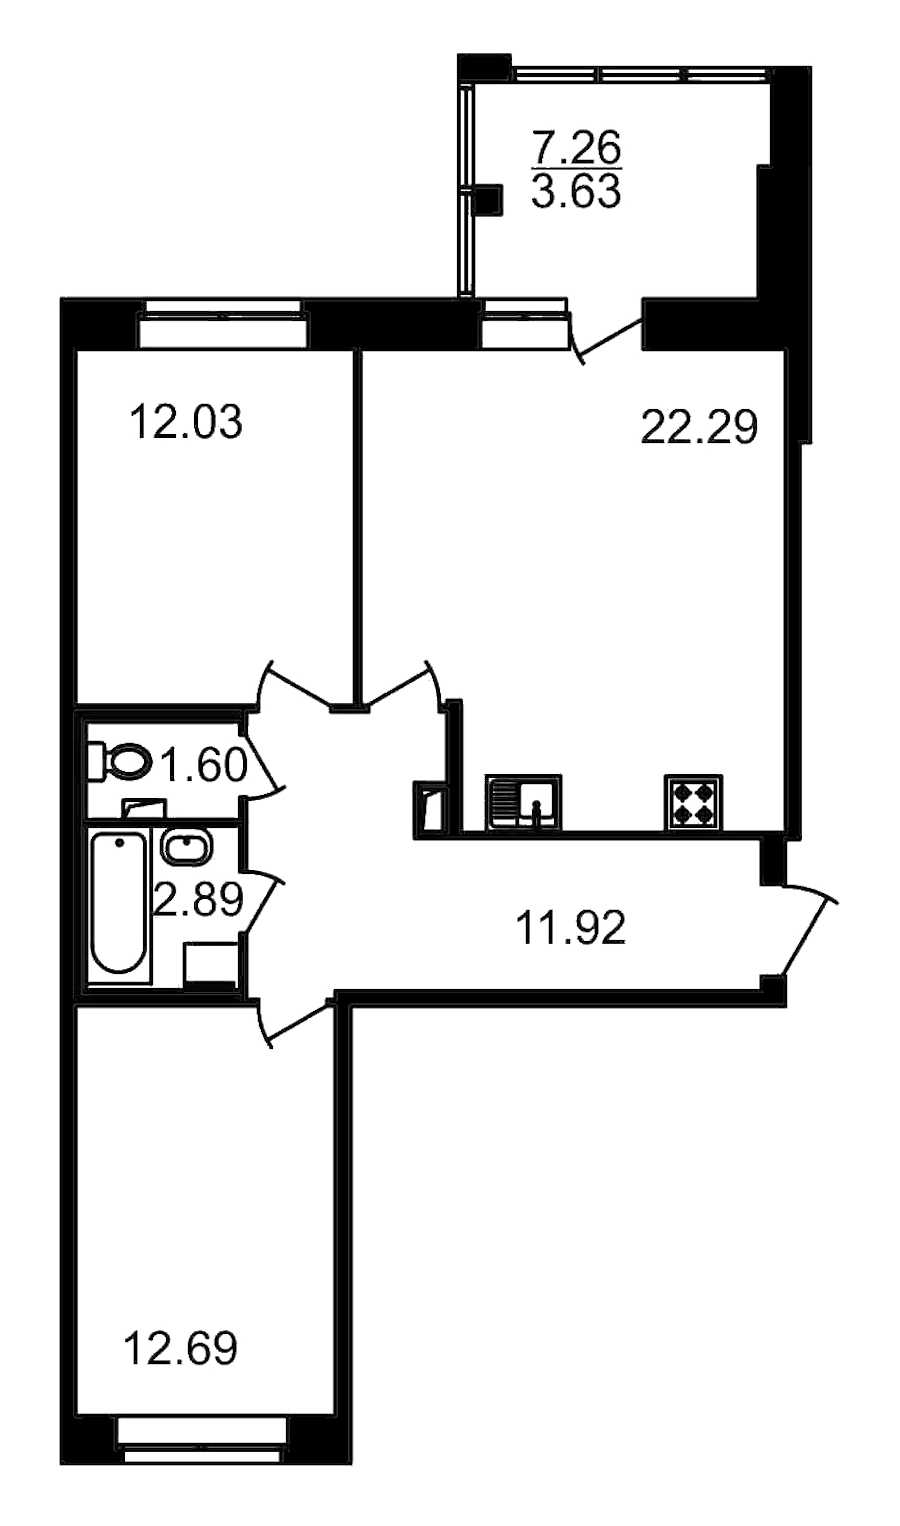 Двухкомнатная квартира в : площадь 70.68 м2 , этаж: 2 – купить в Санкт-Петербурге